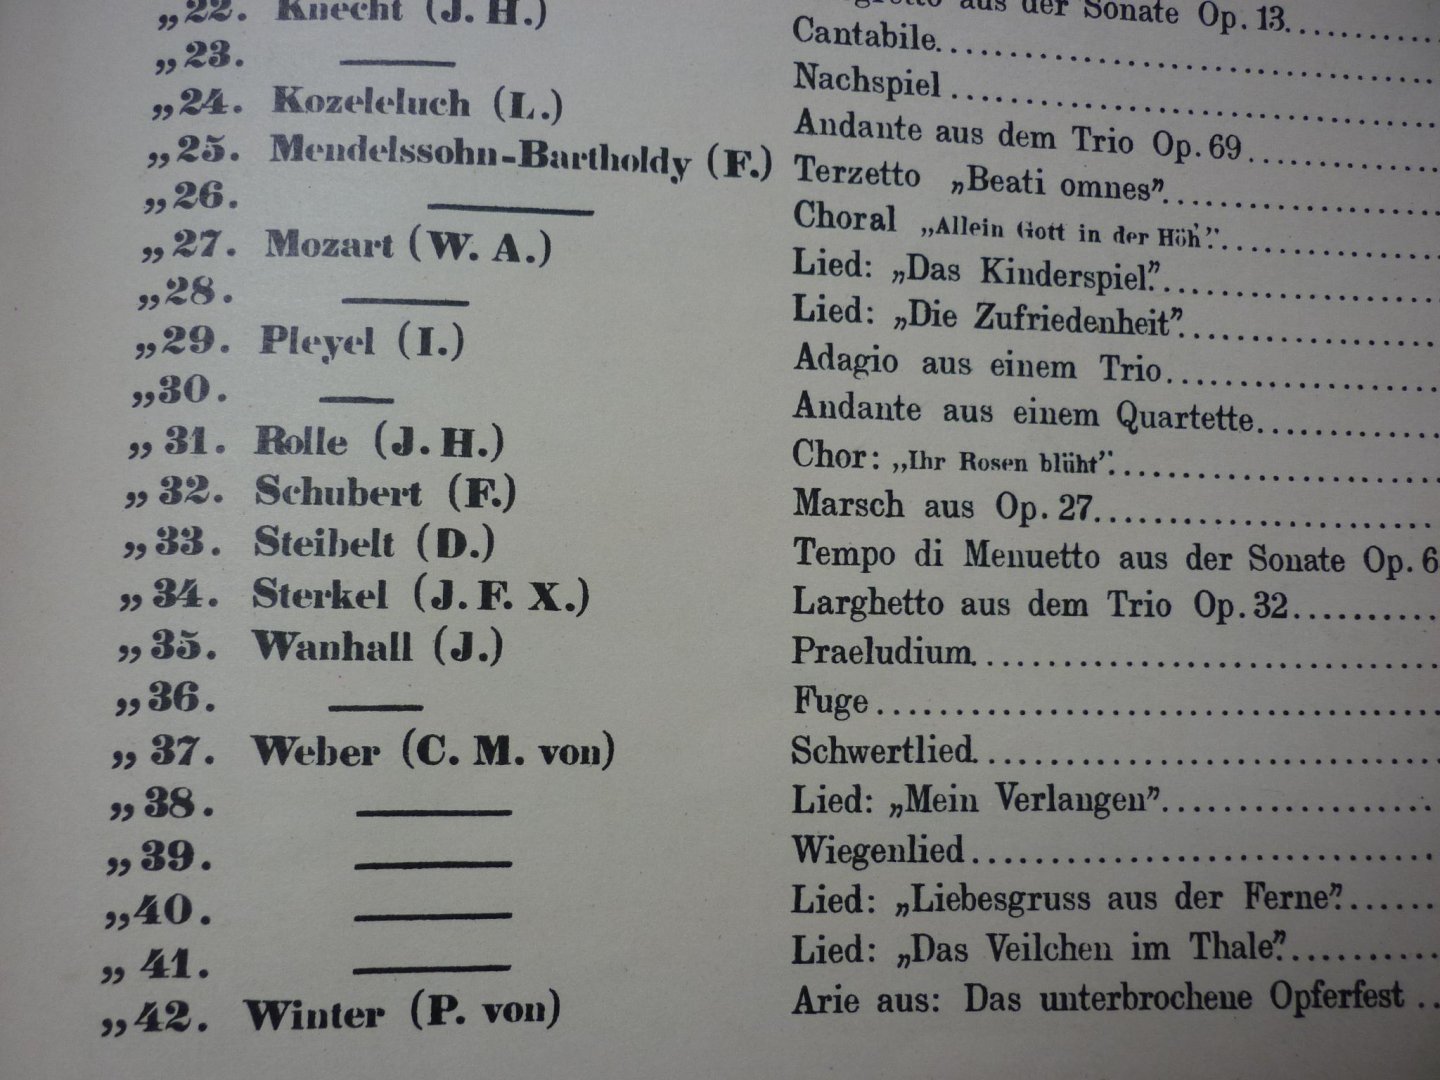 Westbrook; Dr. W.J. - Album Allemand - 42 Morceaux Célebres transcrits pour Orgue + Album Francais - 37 Morceaux Célebres pour Orgue